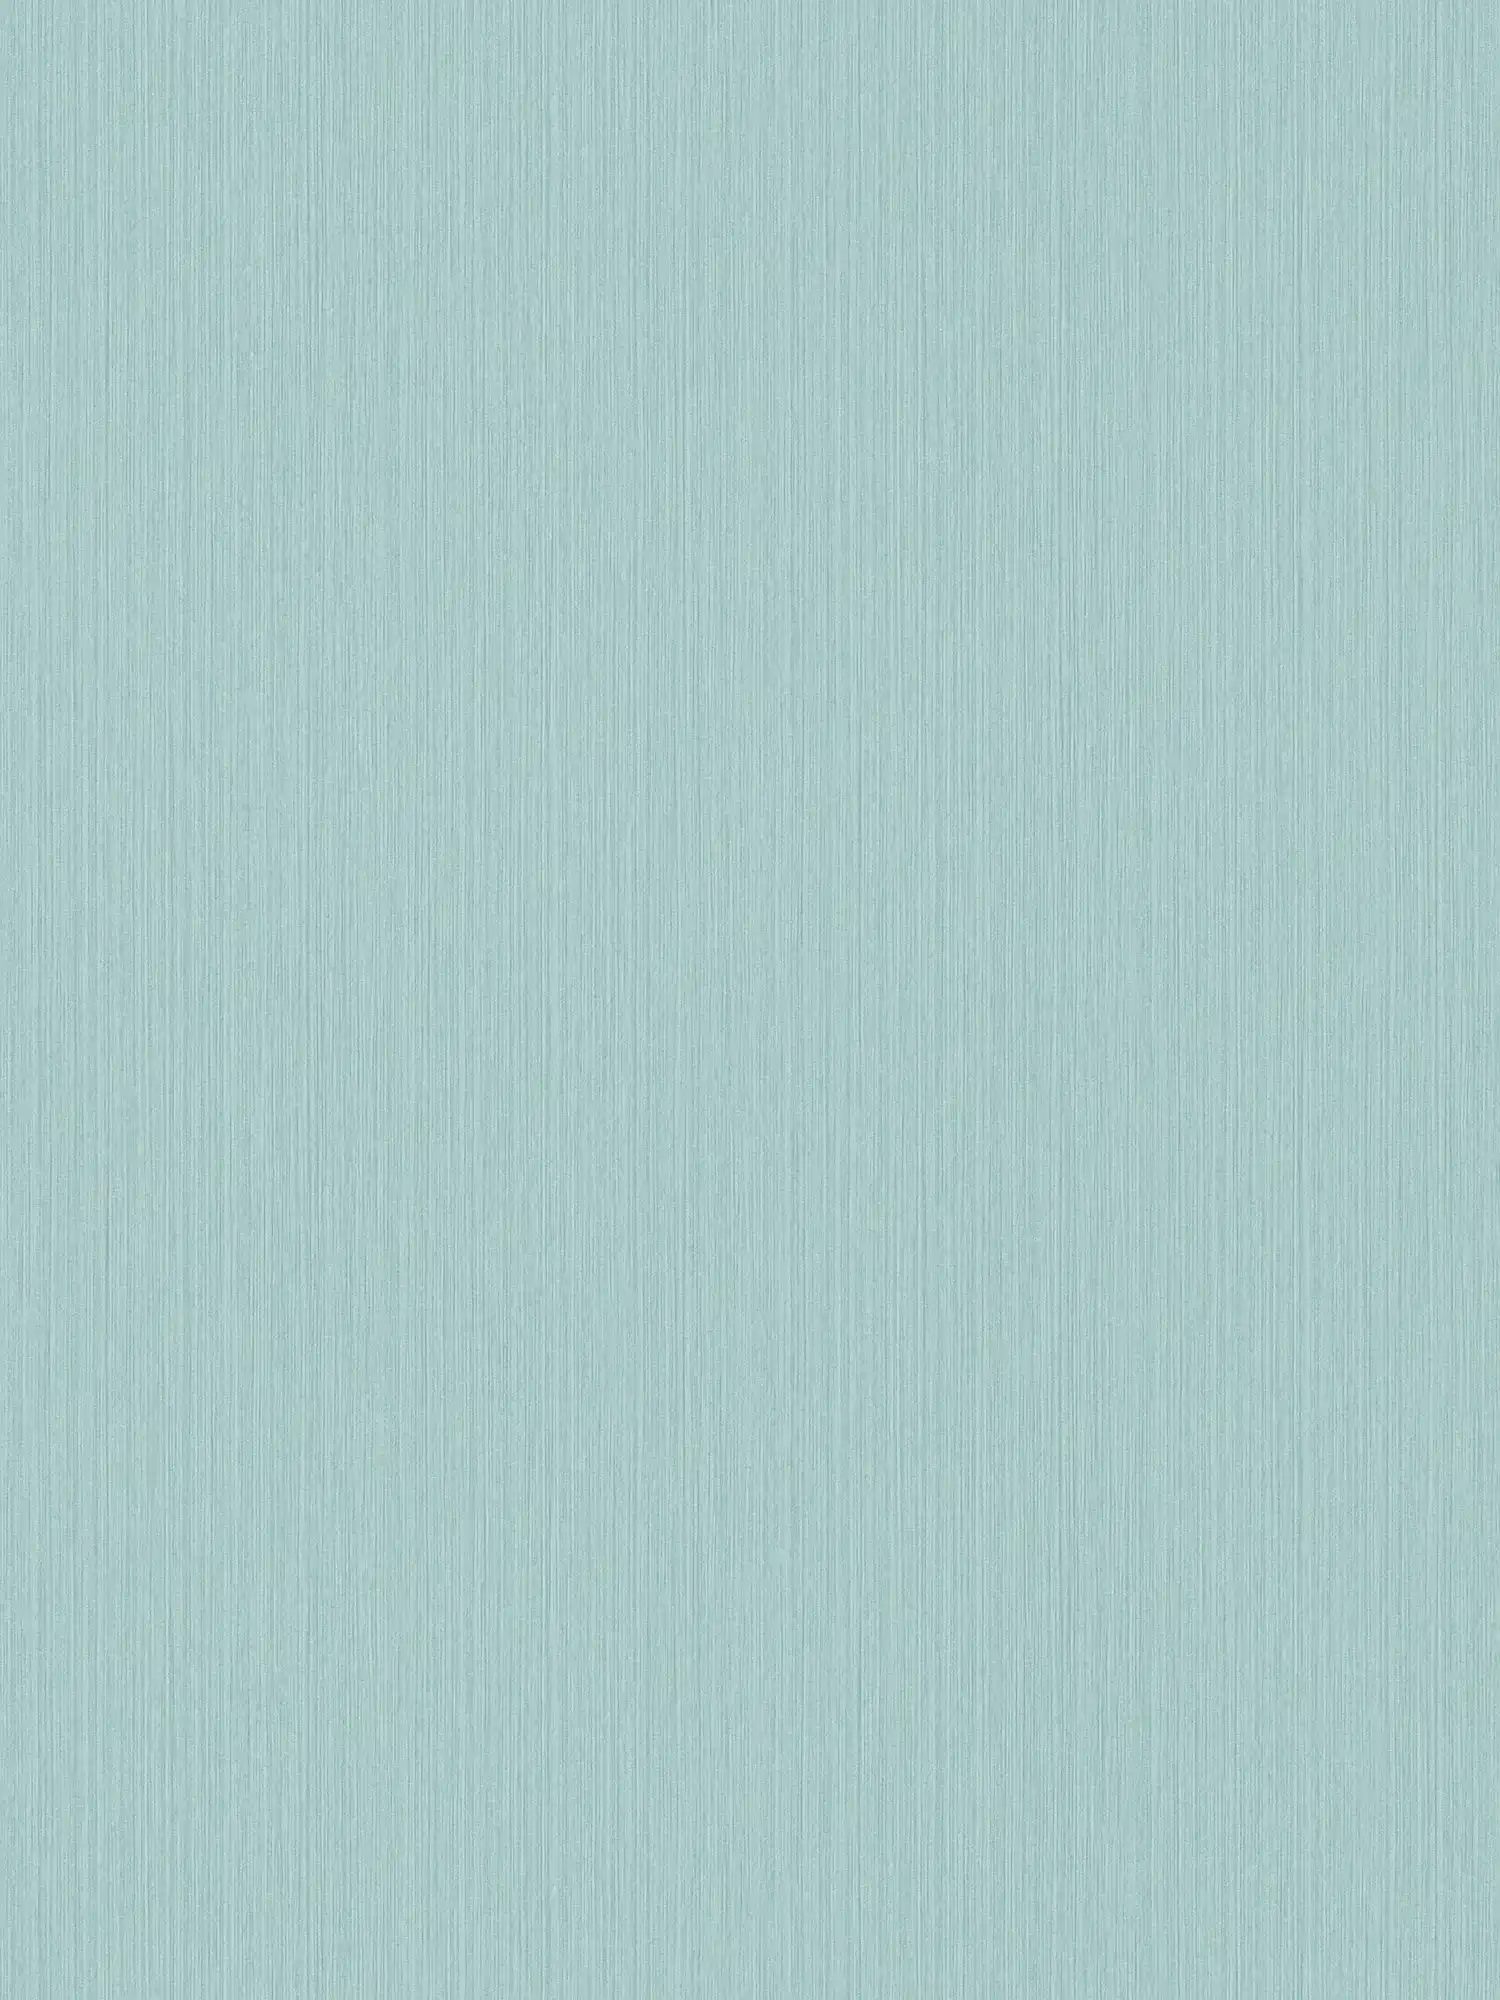 Einfarbige Tapete Hellblau mit meliertem Textileffekt von MICHALSKY
